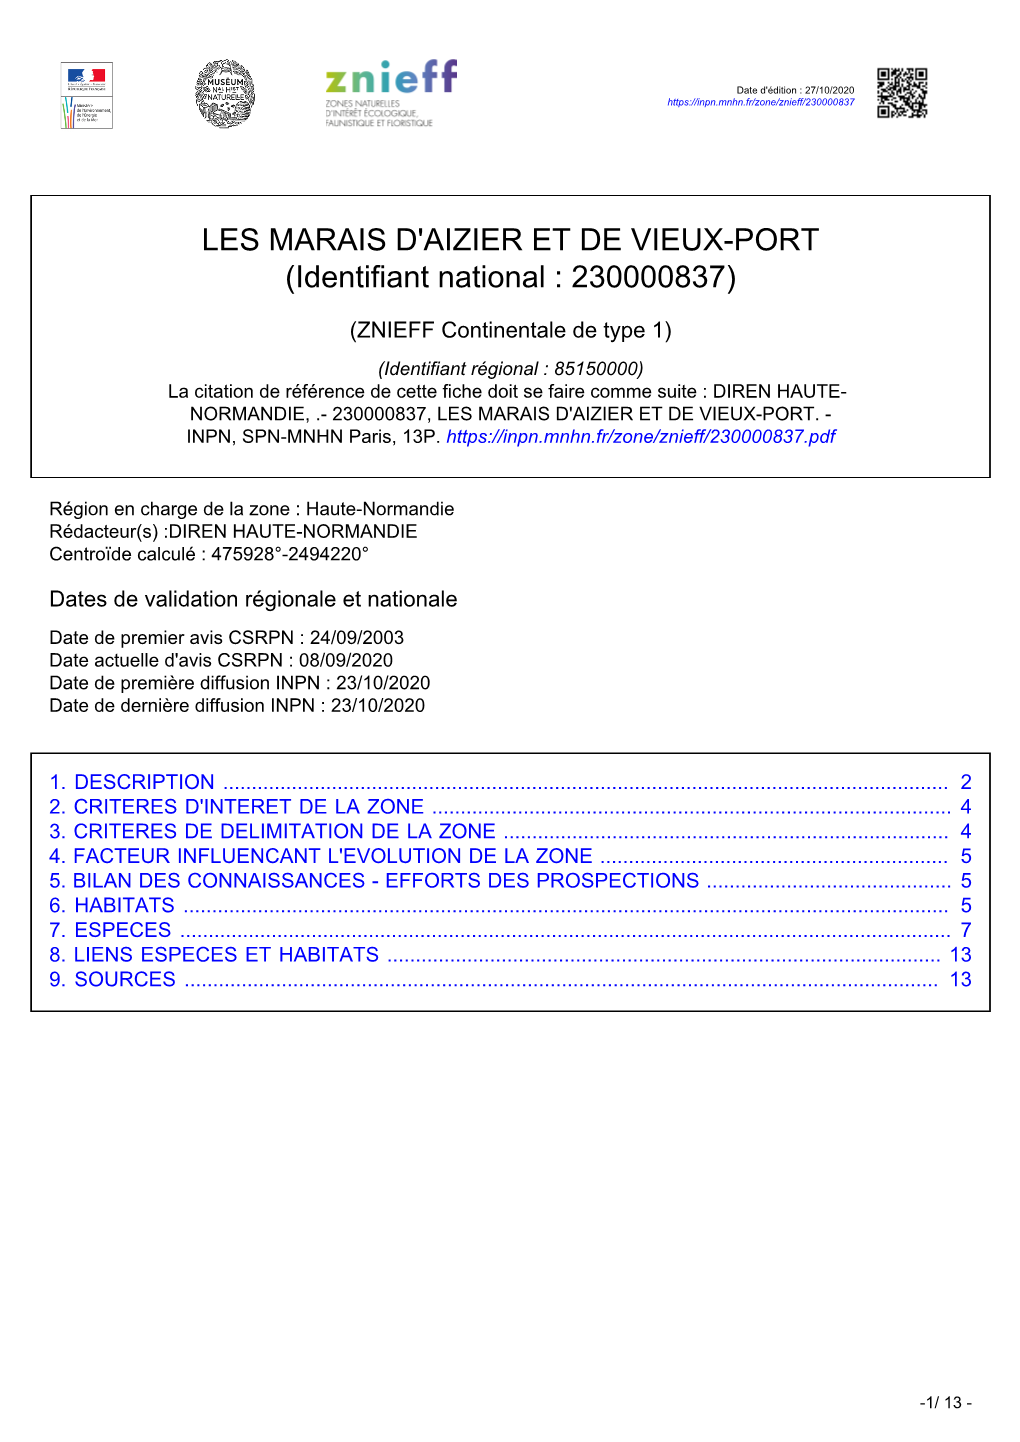 LES MARAIS D'aizier ET DE VIEUX-PORT (Identifiant National : 230000837)